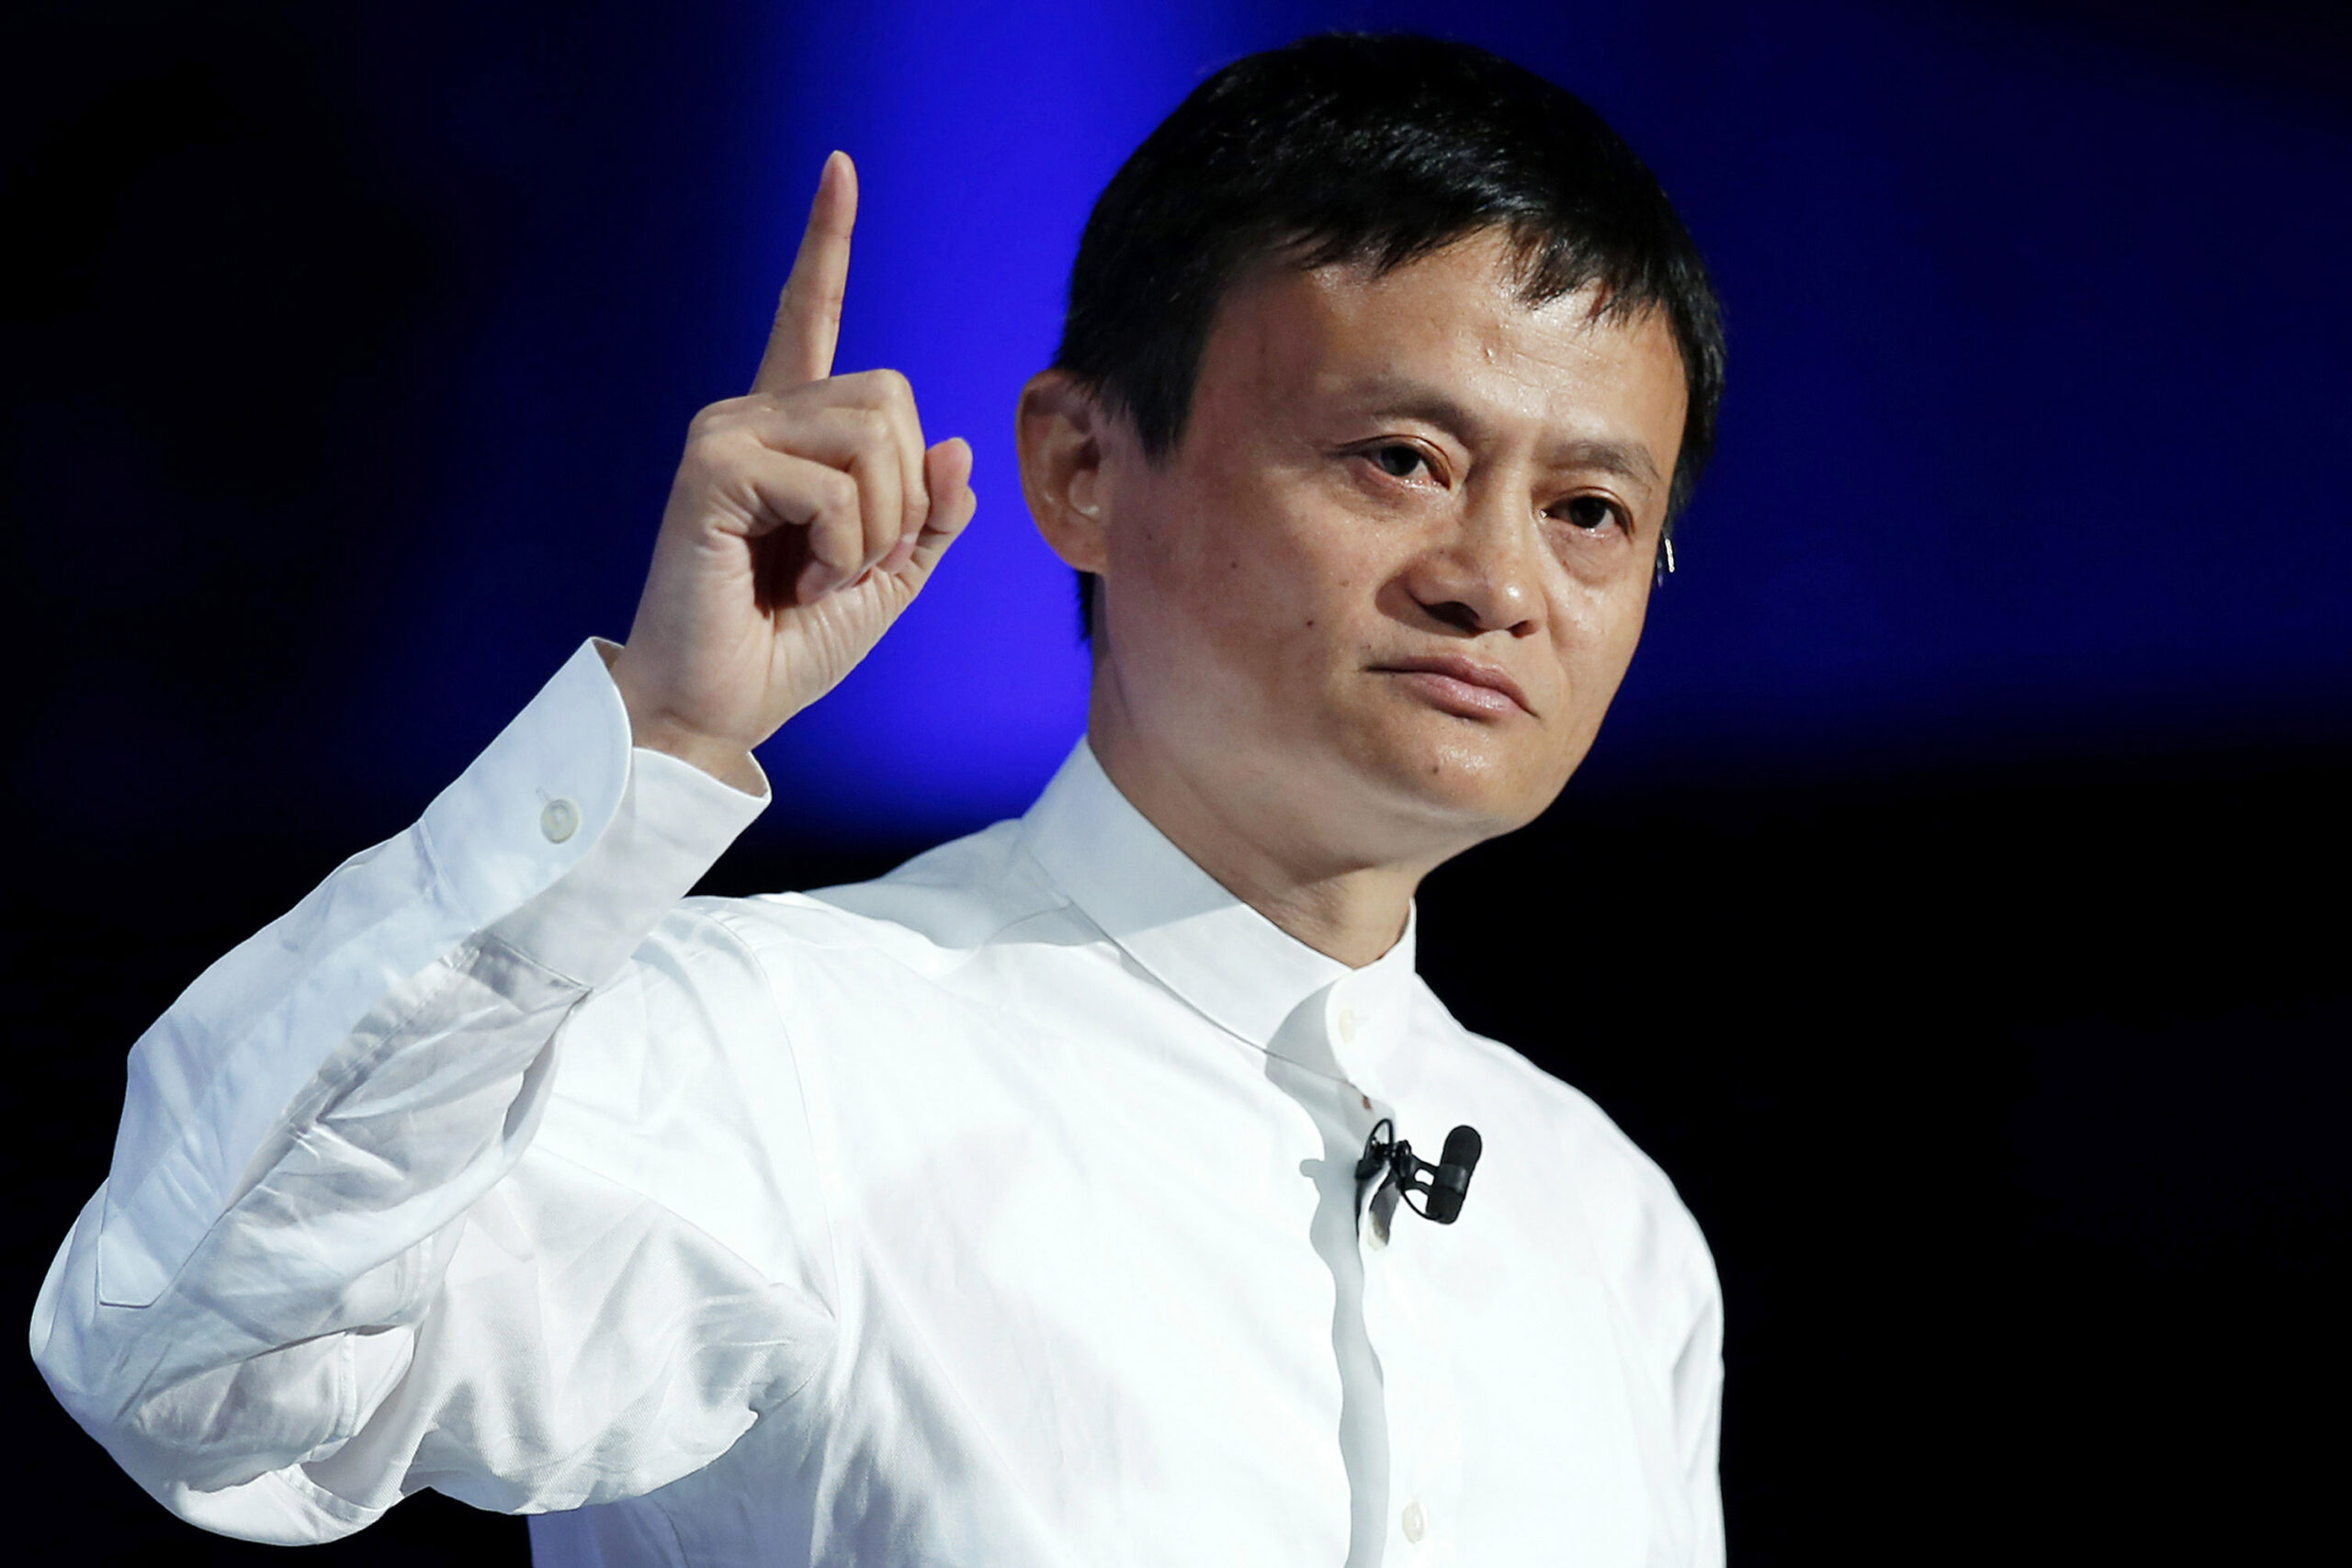 Alibaba Group'un kurucusu Jack Ma, E-ticaret, online para transferleri ve online alışveriş alanlarında uzmanlaşmış bir şirketler grubuna sahiptir.